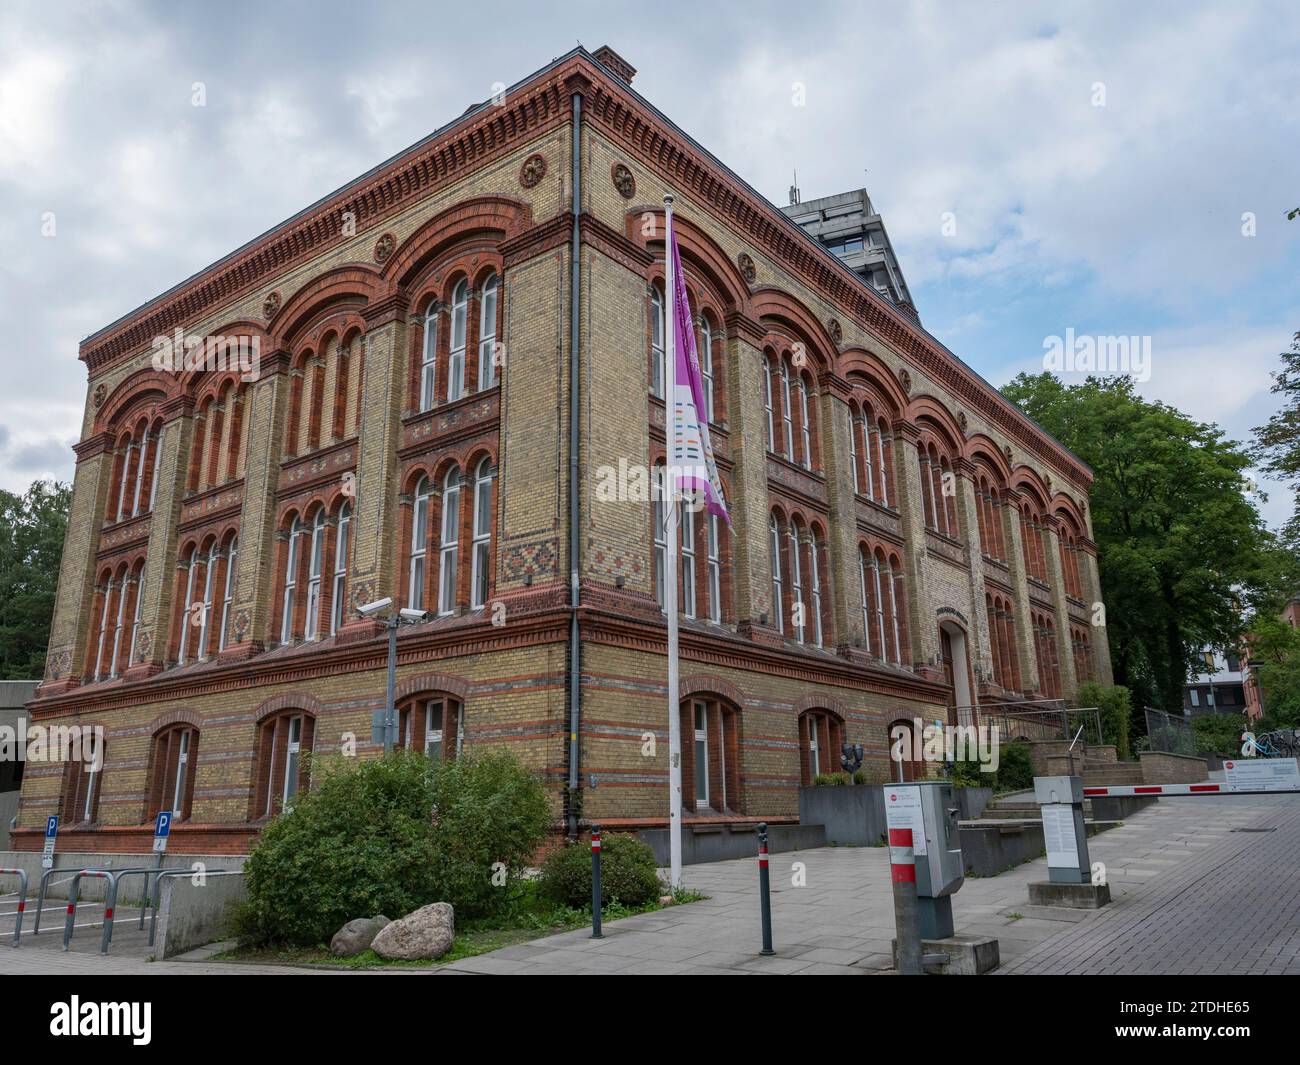 La Collection historique médicale et pharmaceutique, un musée à Kiel, Allemagne. Banque D'Images